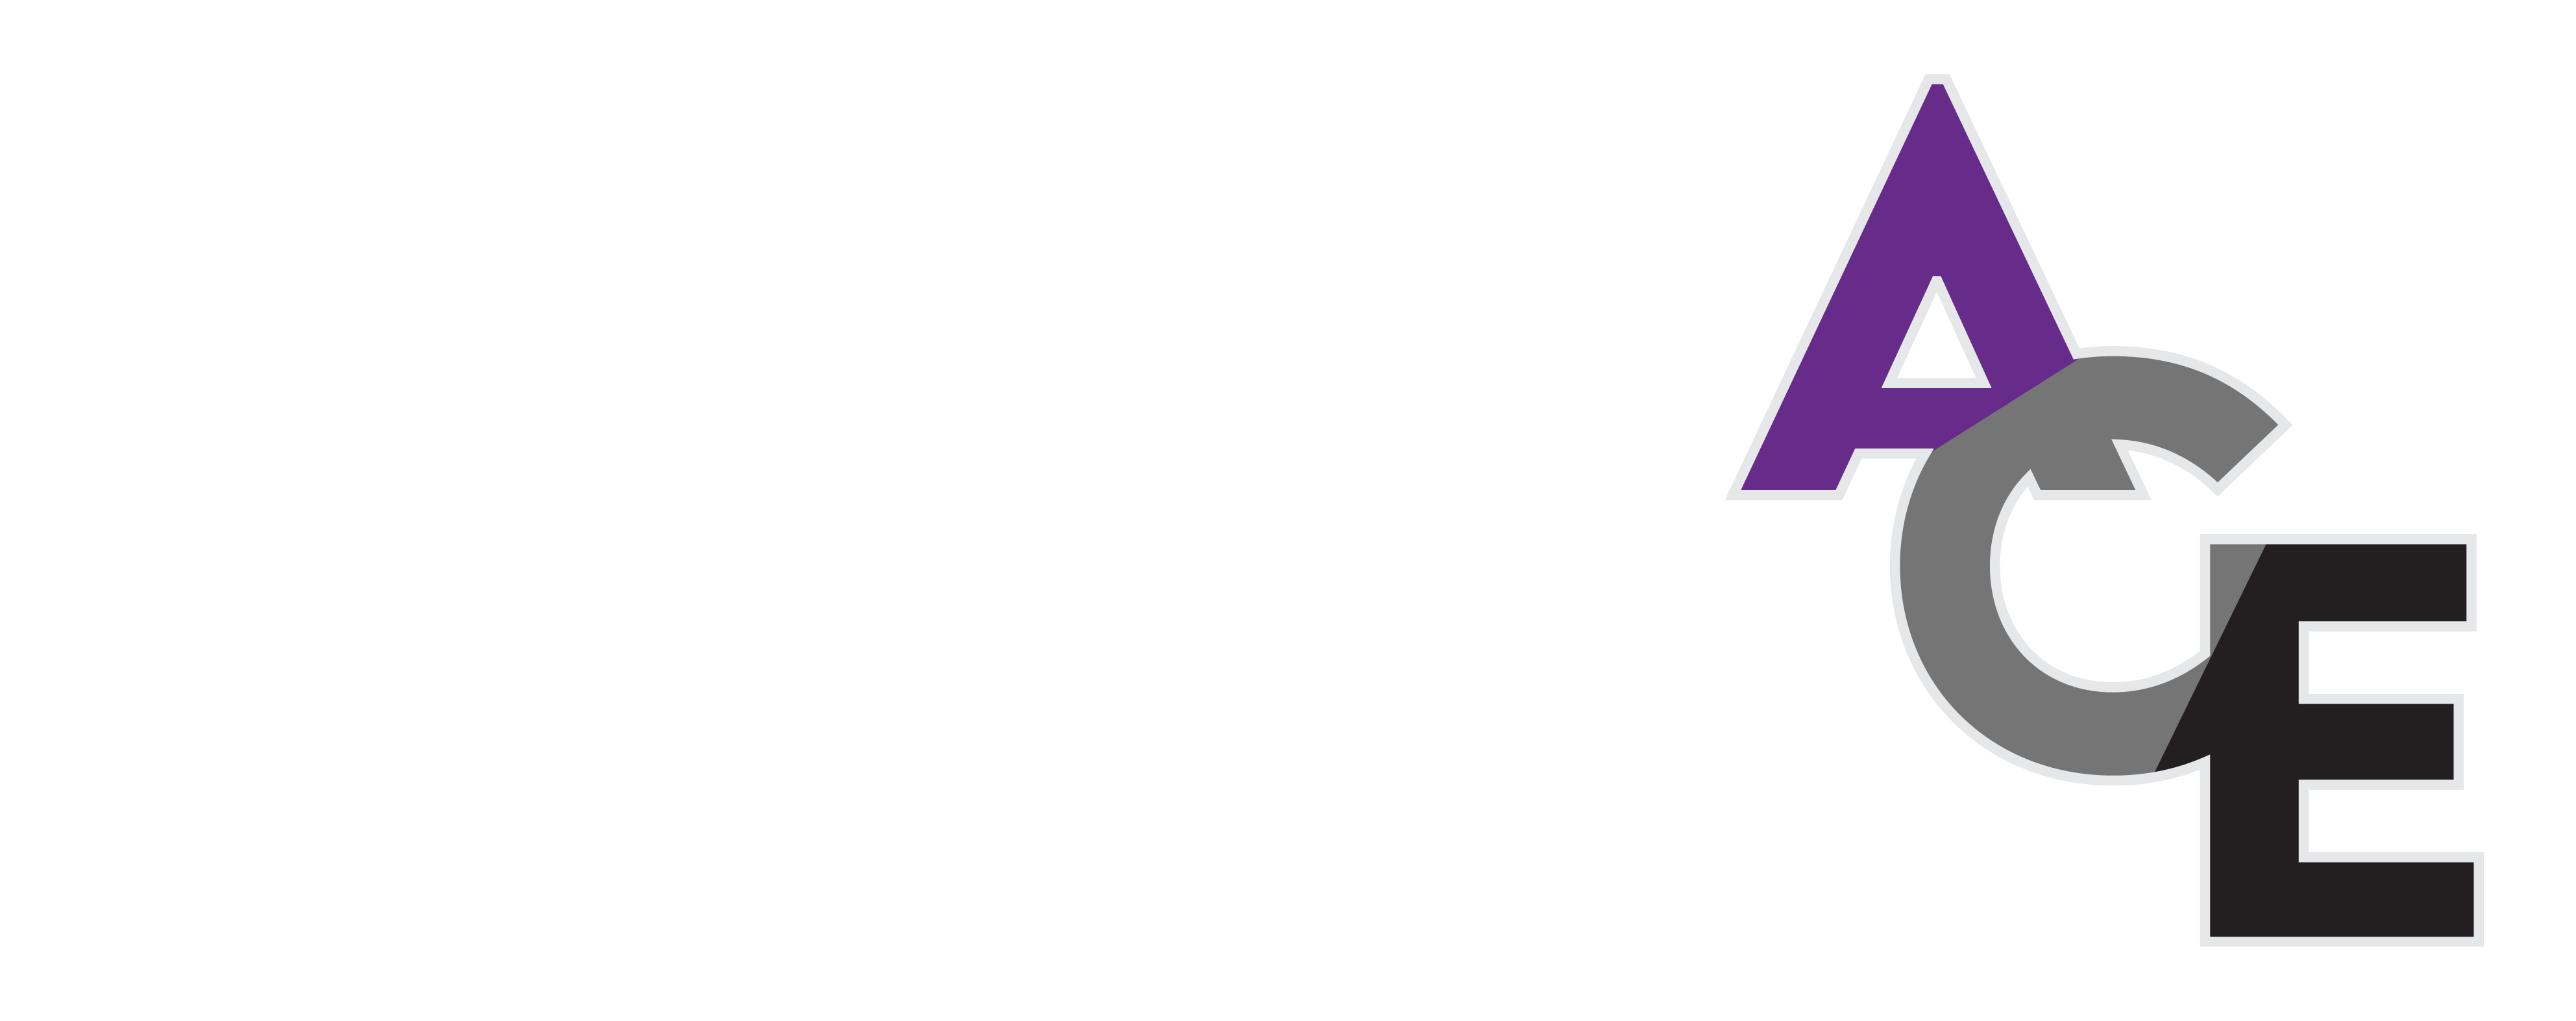 Australian Asexuals